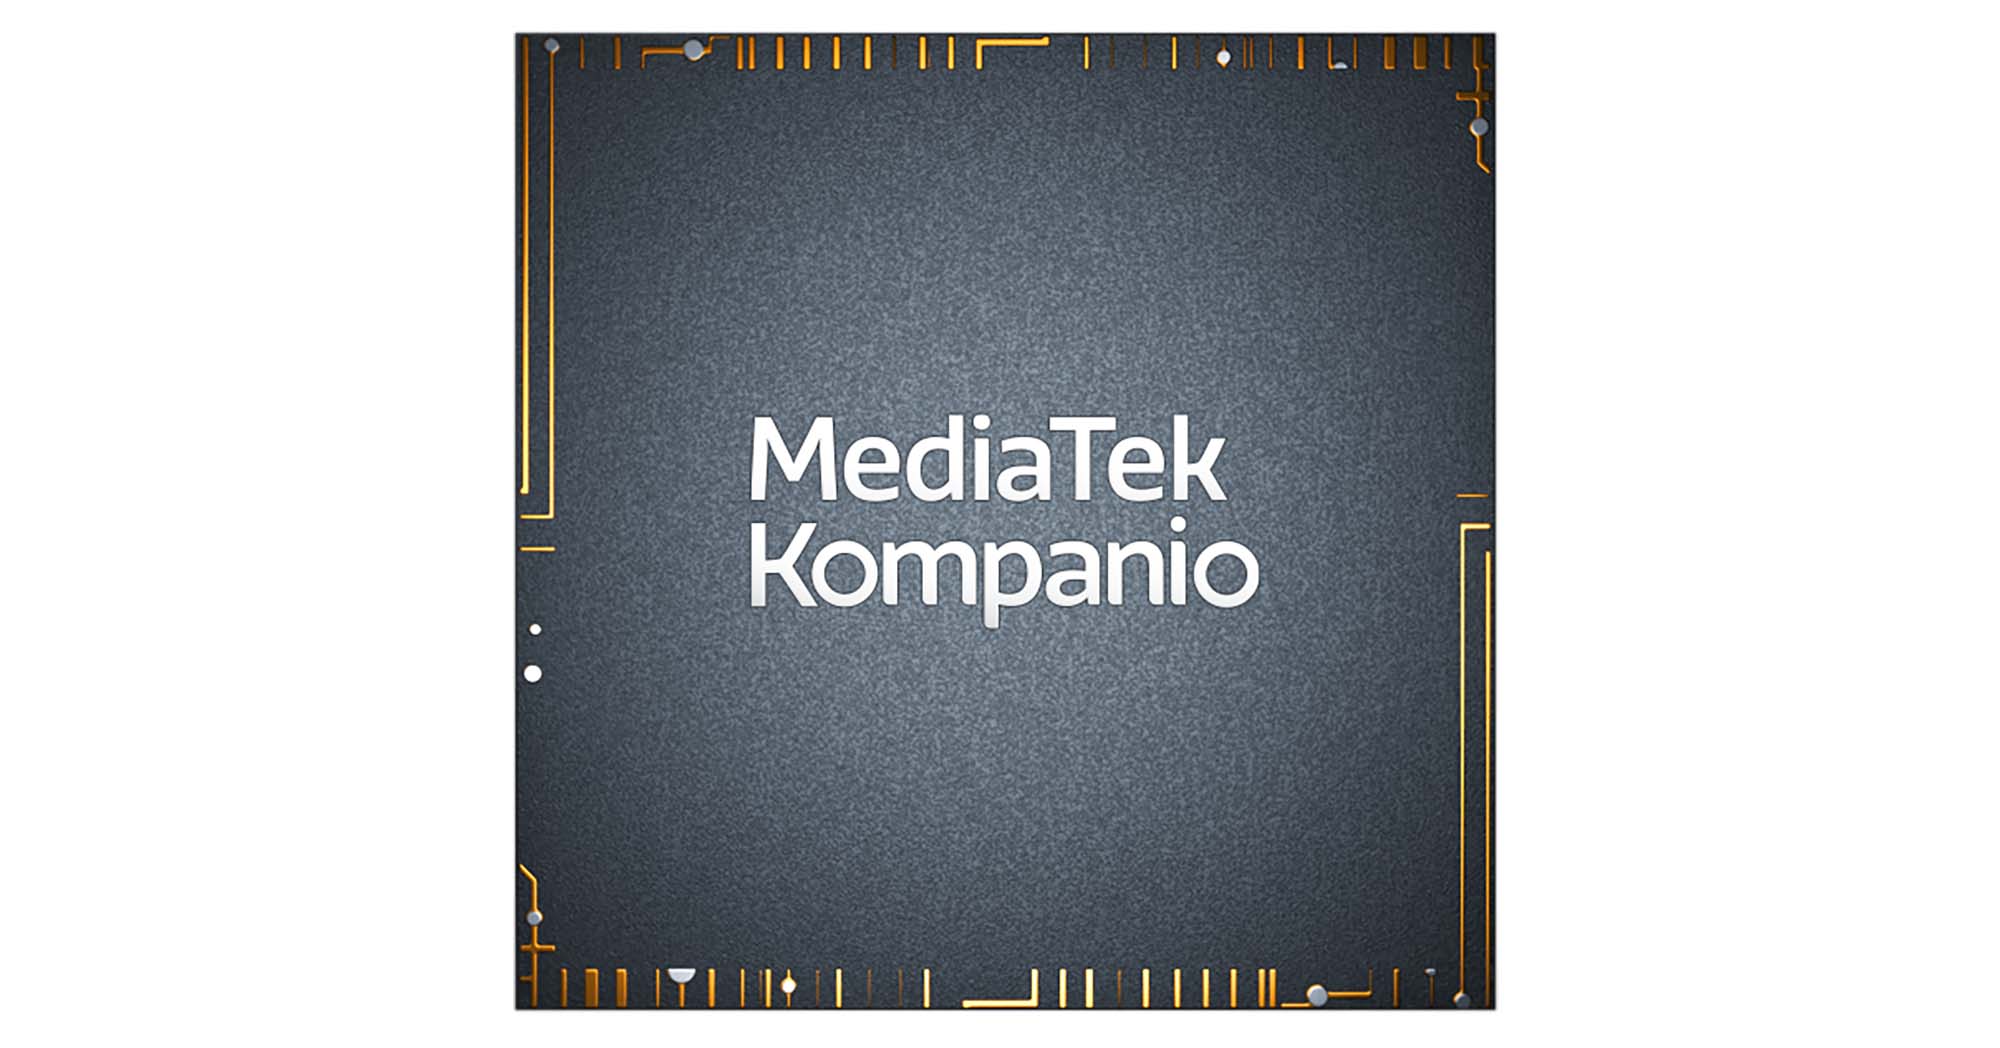 MediaTek công bố Kompanio 900T giúp nâng cao trải nghiệm máy tính cho Tablets và Notebooks